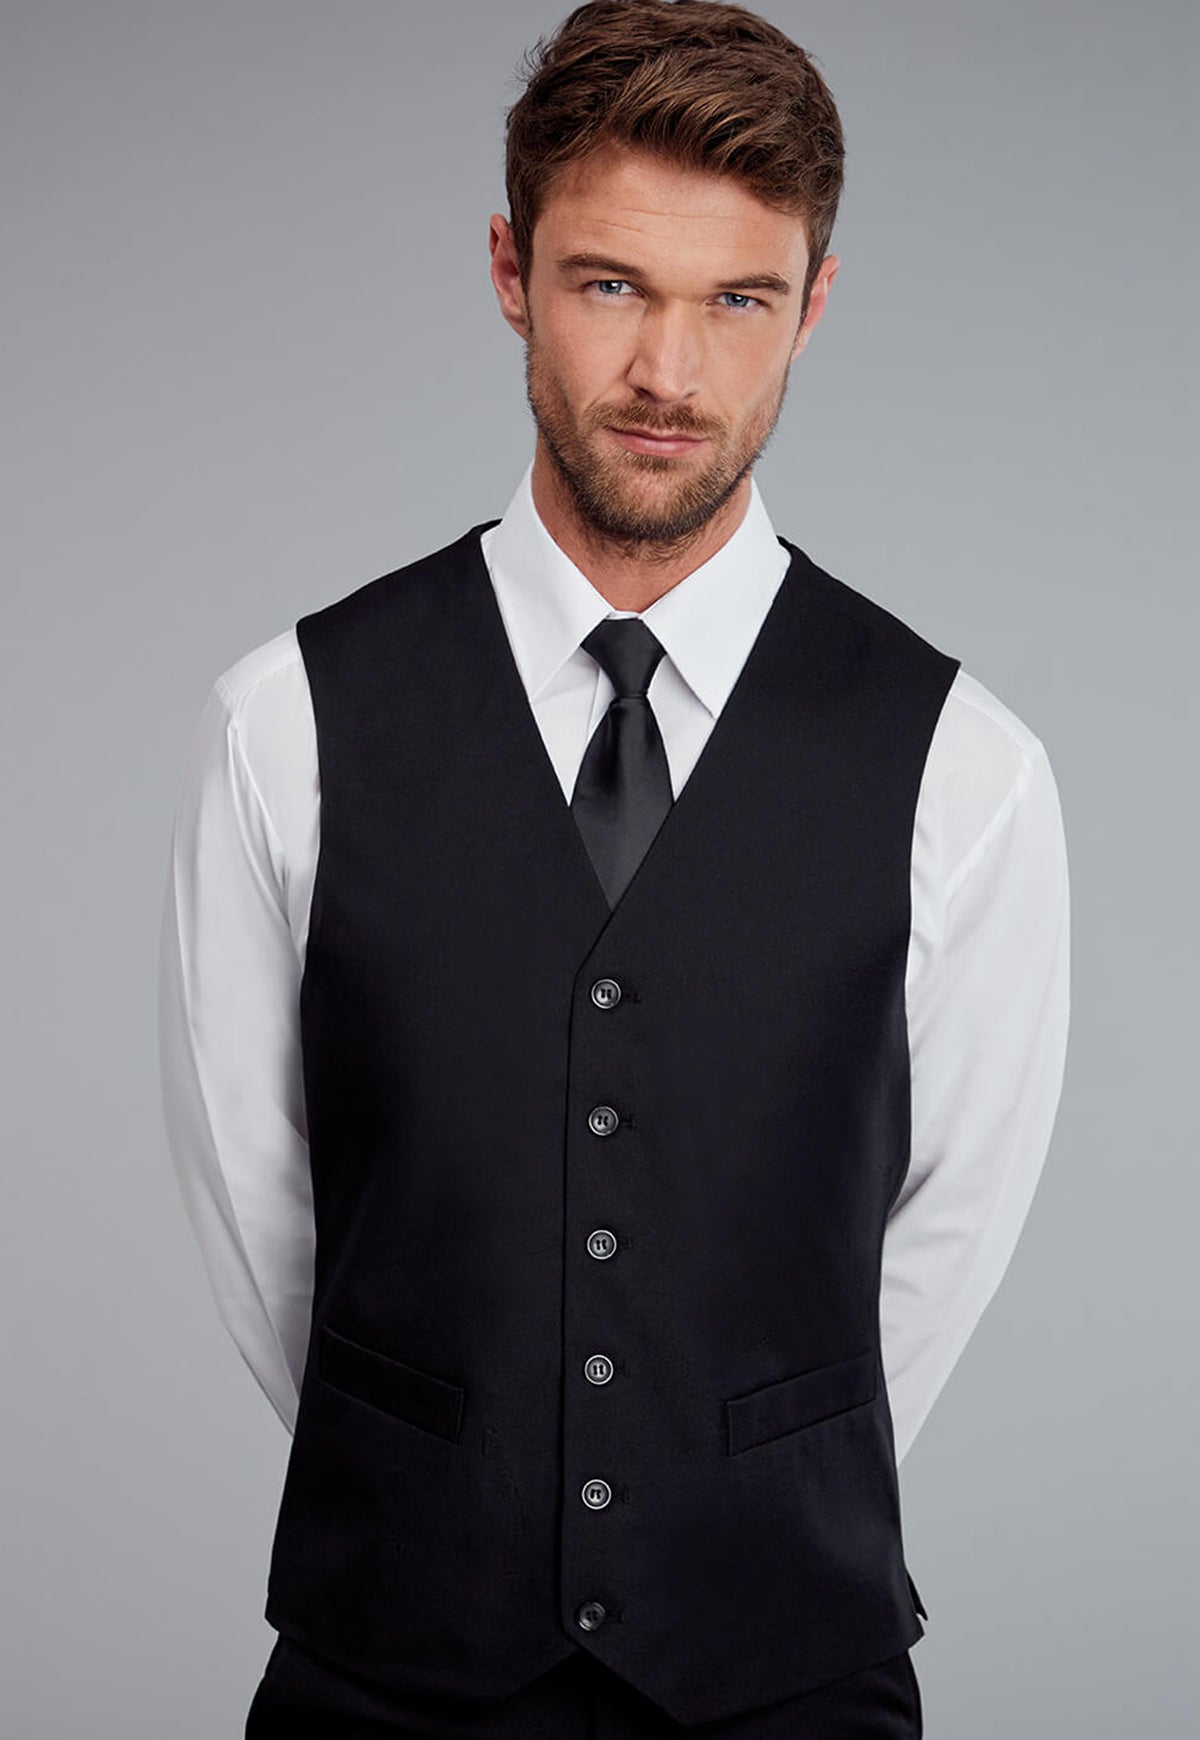 Hospitality Men's Waistcoat - The Work Uniform Company